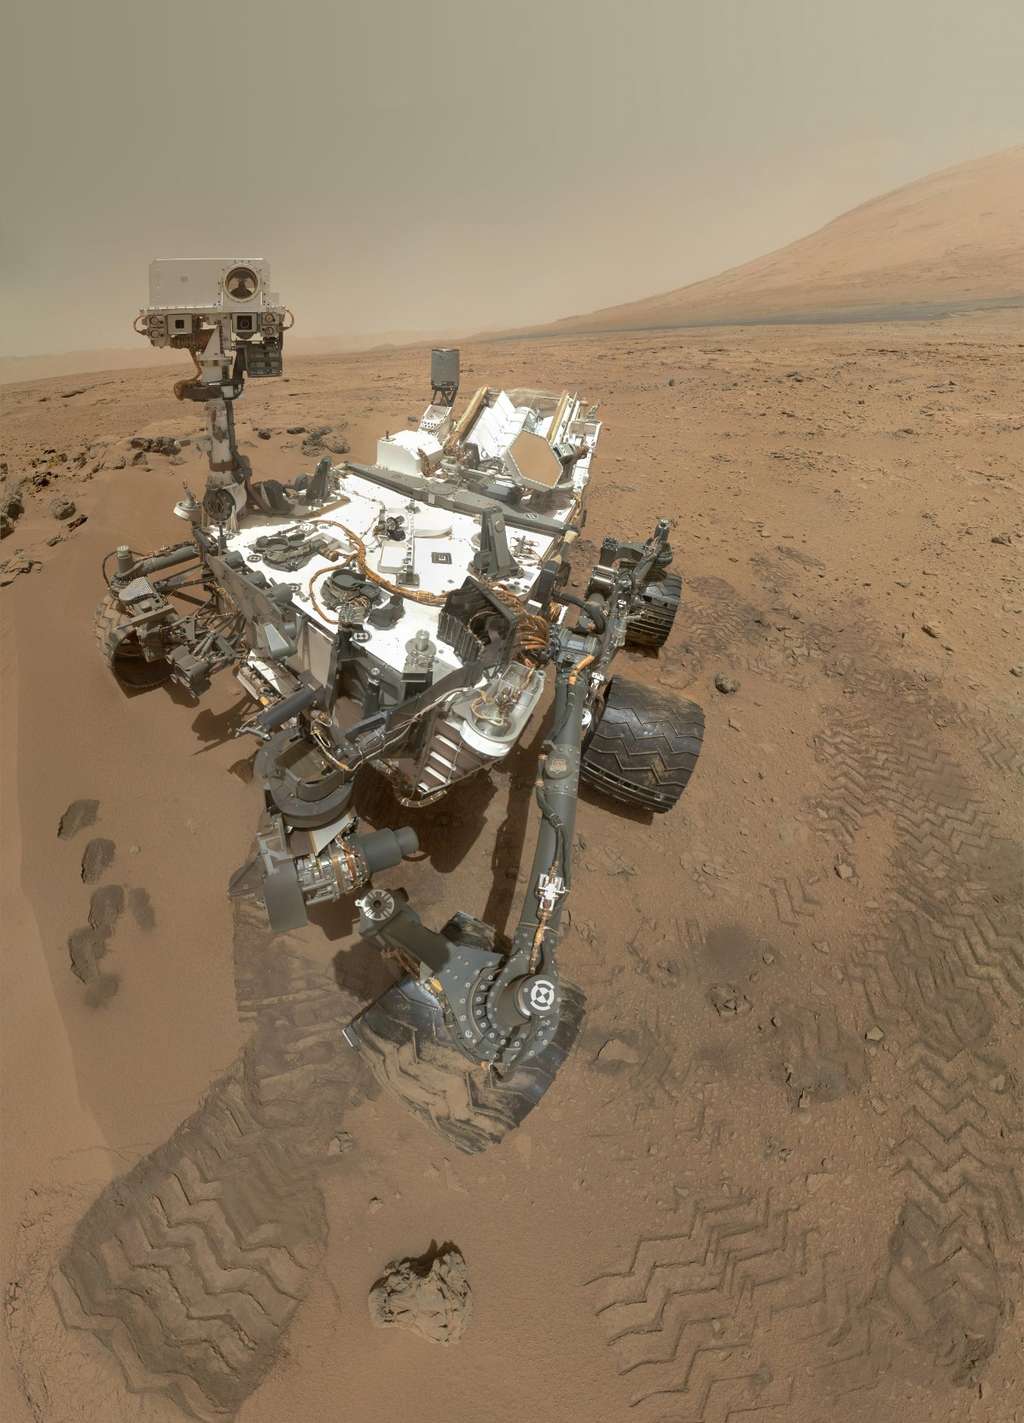  Le selfie est devenue une telle mode que même le rover martien Curiosity, sillonnant la Planète rouge depuis août 2012 s’est prêté au jeu ! Mais lui ne risque pas d’attraper des poux ! © Nasa, DP